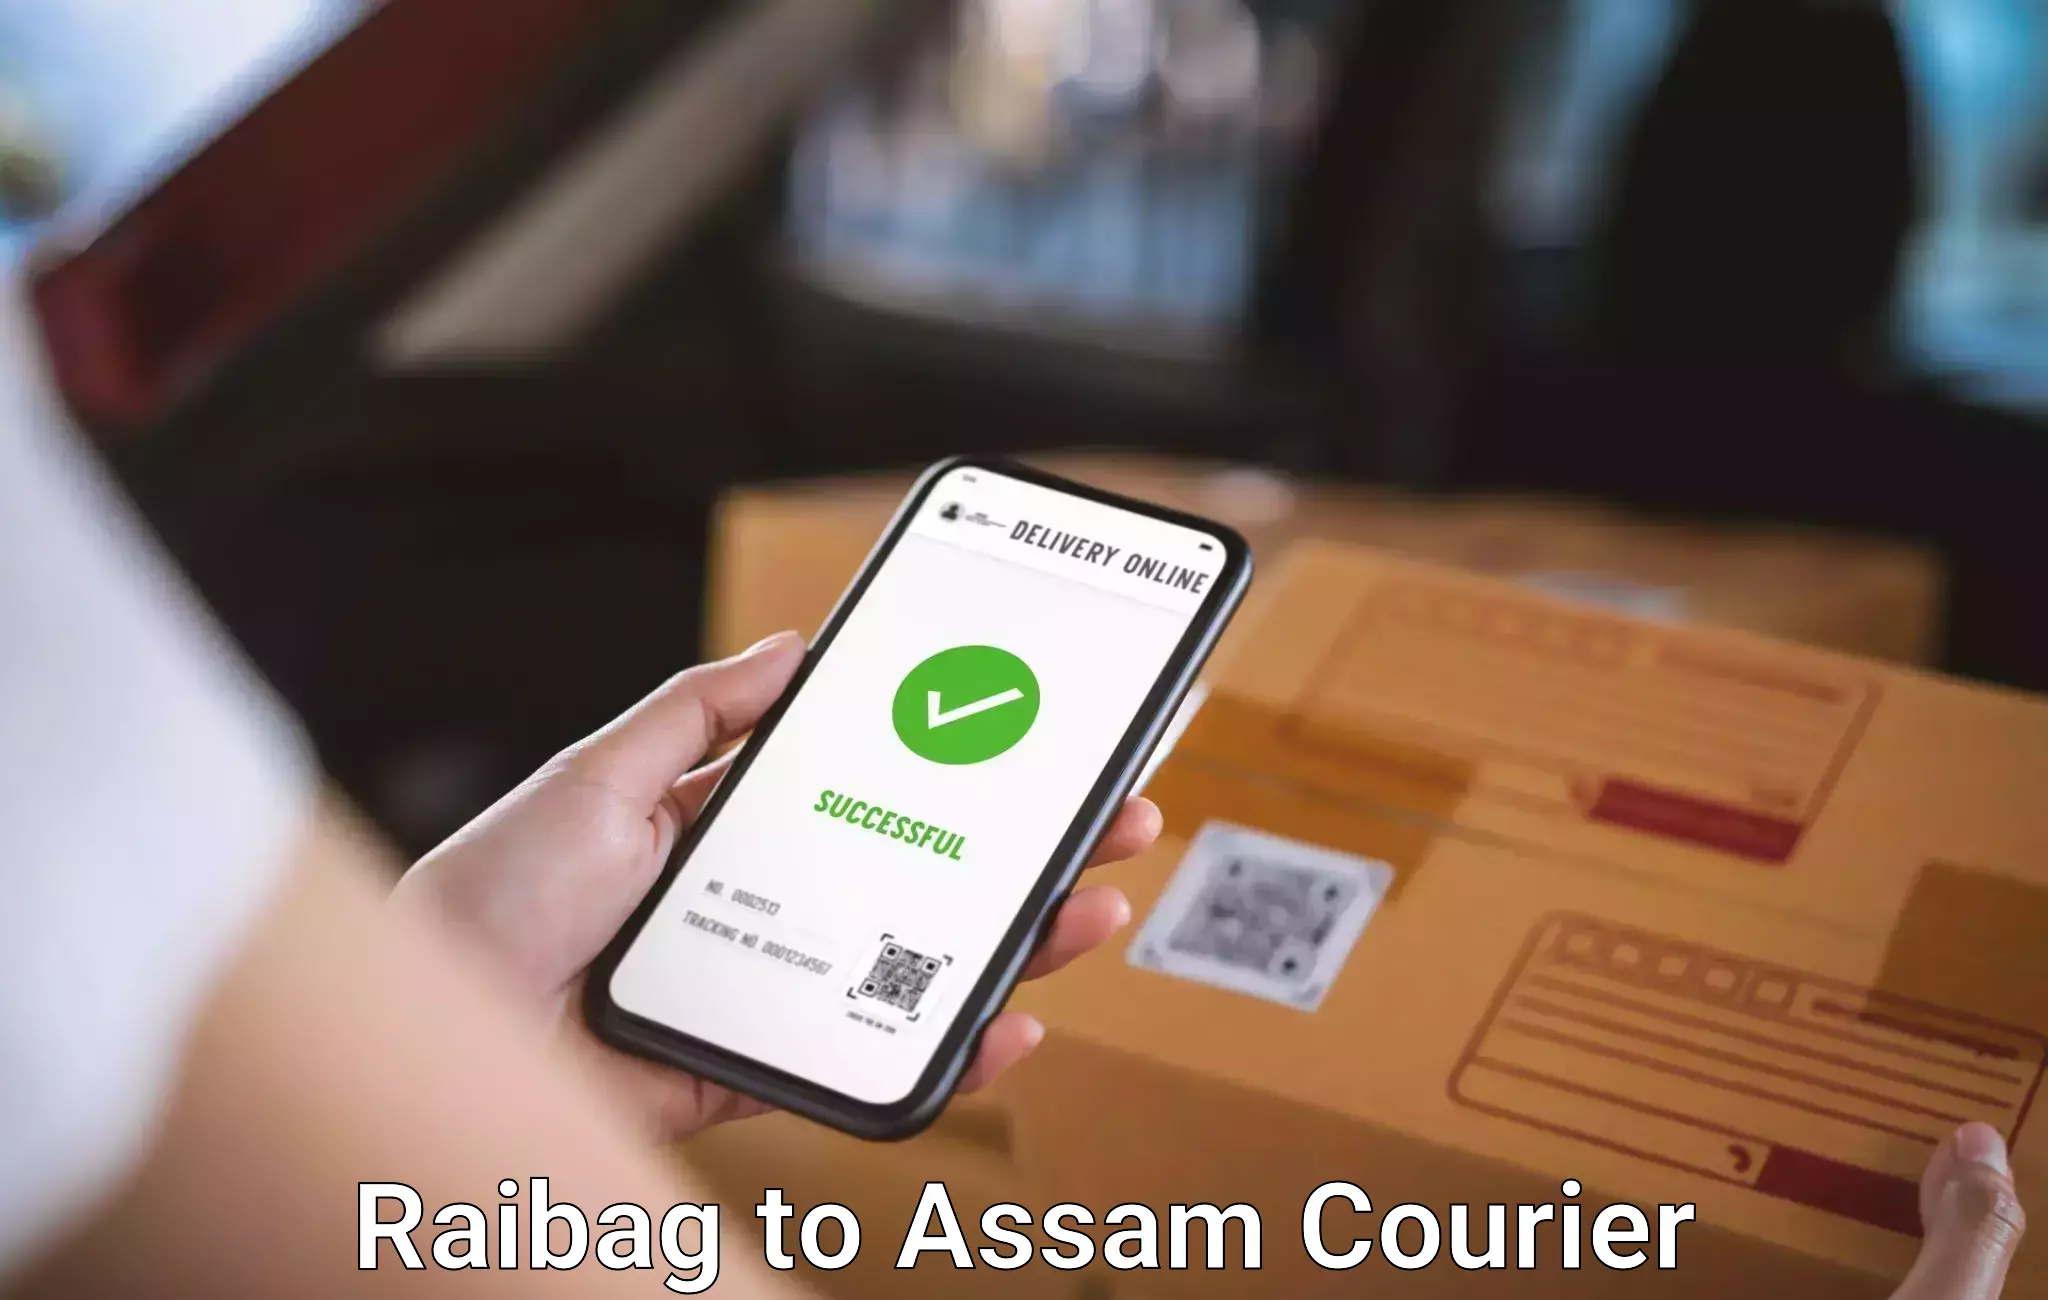 Baggage transport network Raibag to Assam